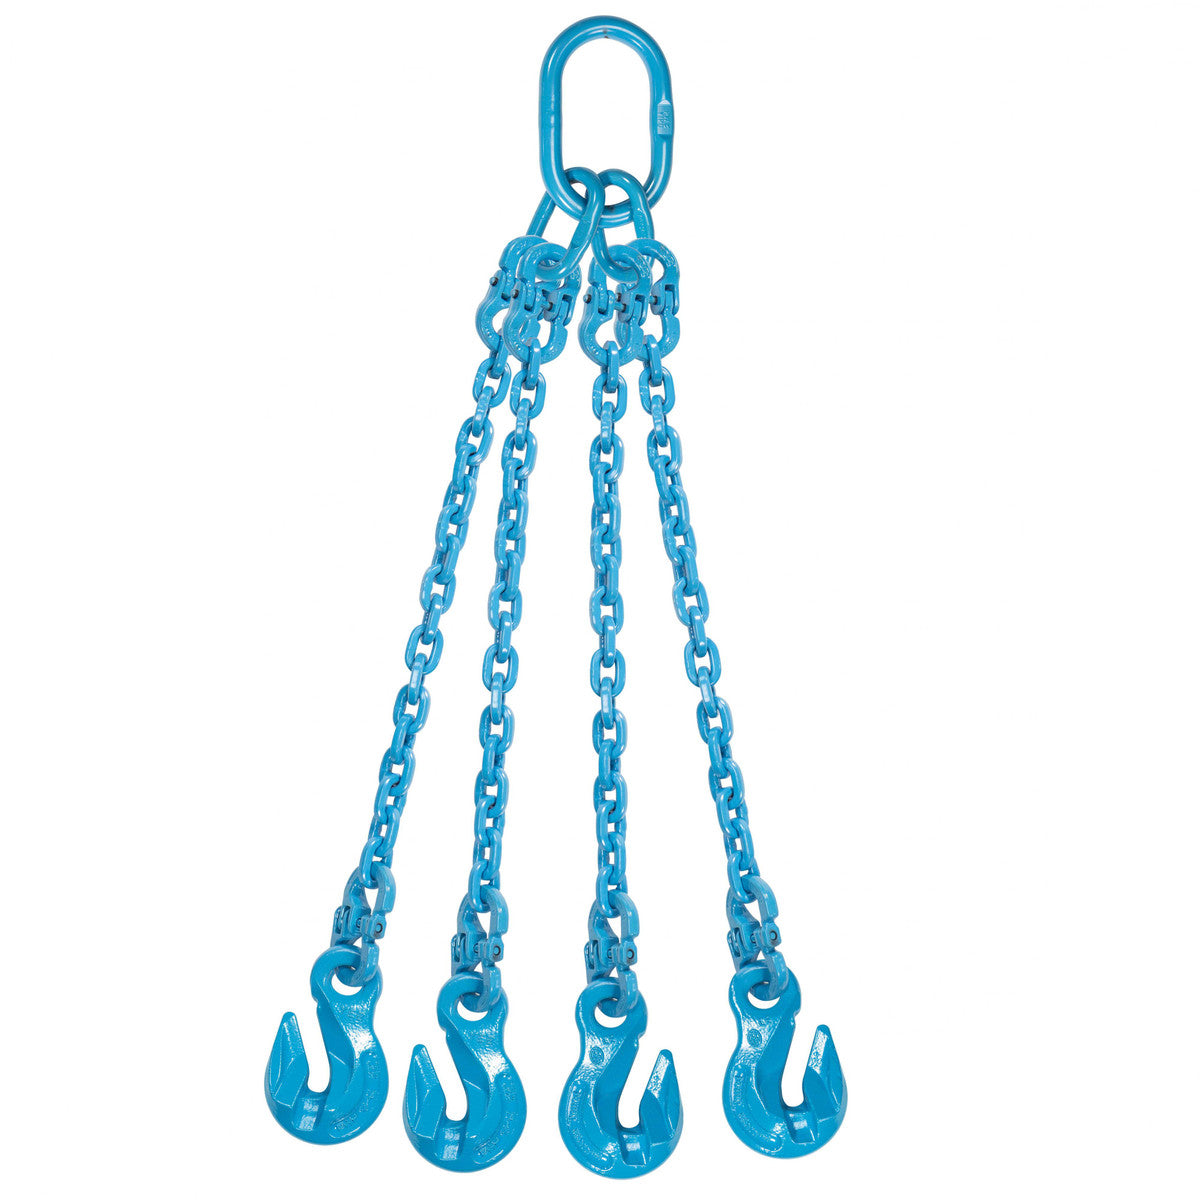 9/32" x 20' - Pewag 4 Leg Chain Sling w/ Grab Hooks - Grade 120